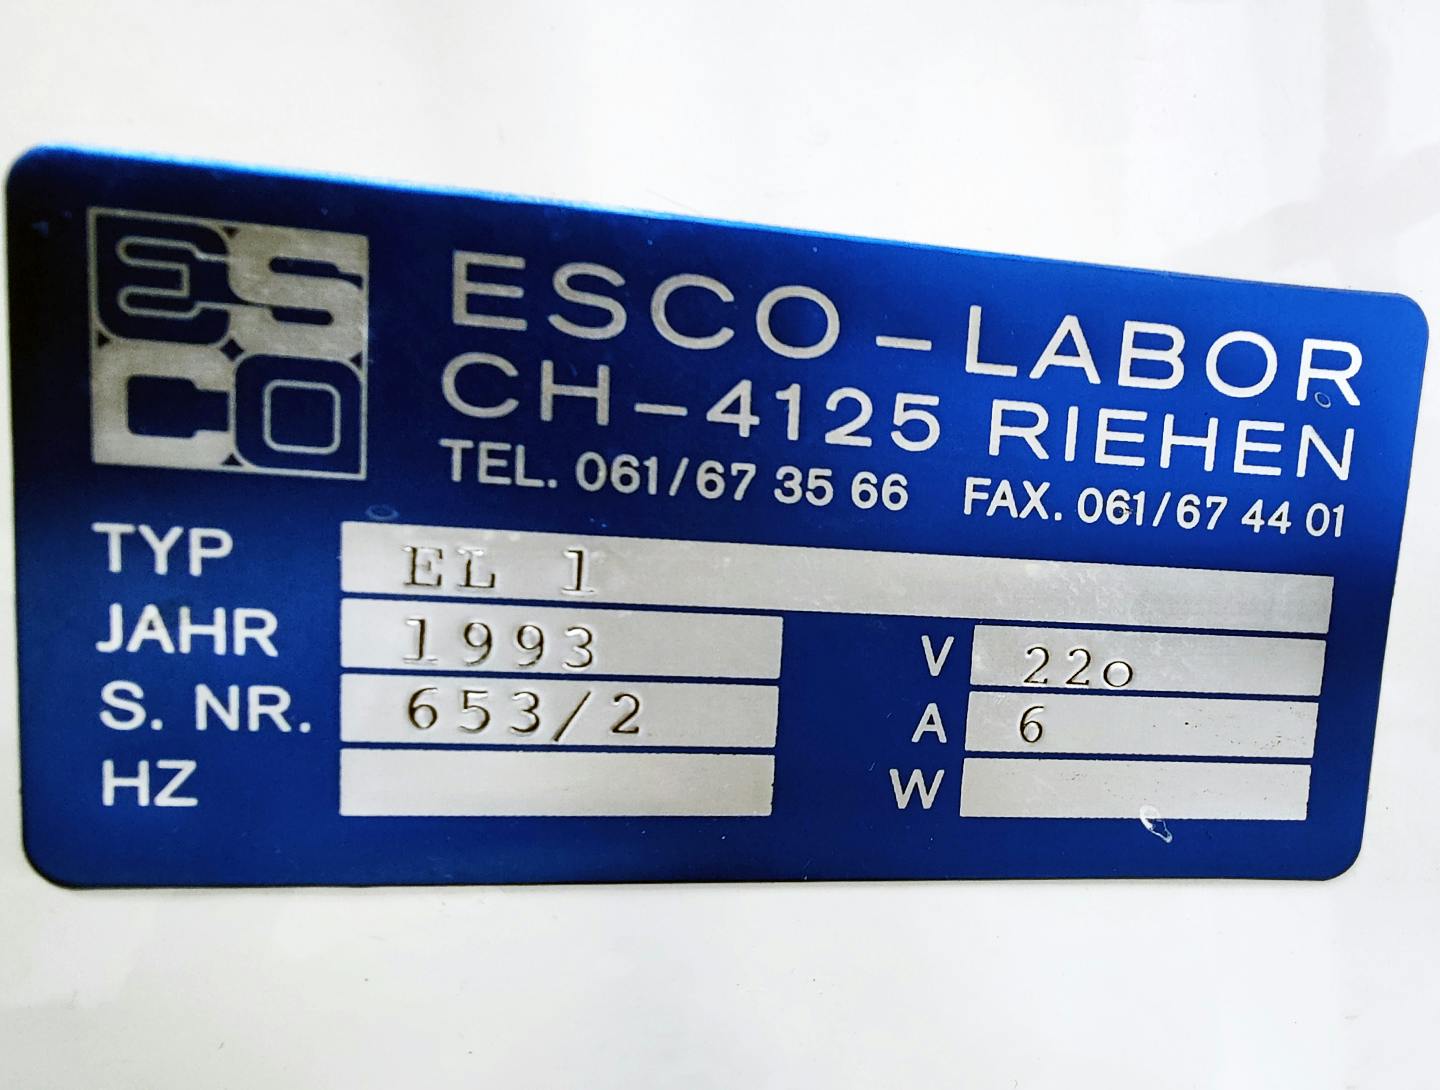 Esco Labor EL1 - Nádoba na zpracování - image 11